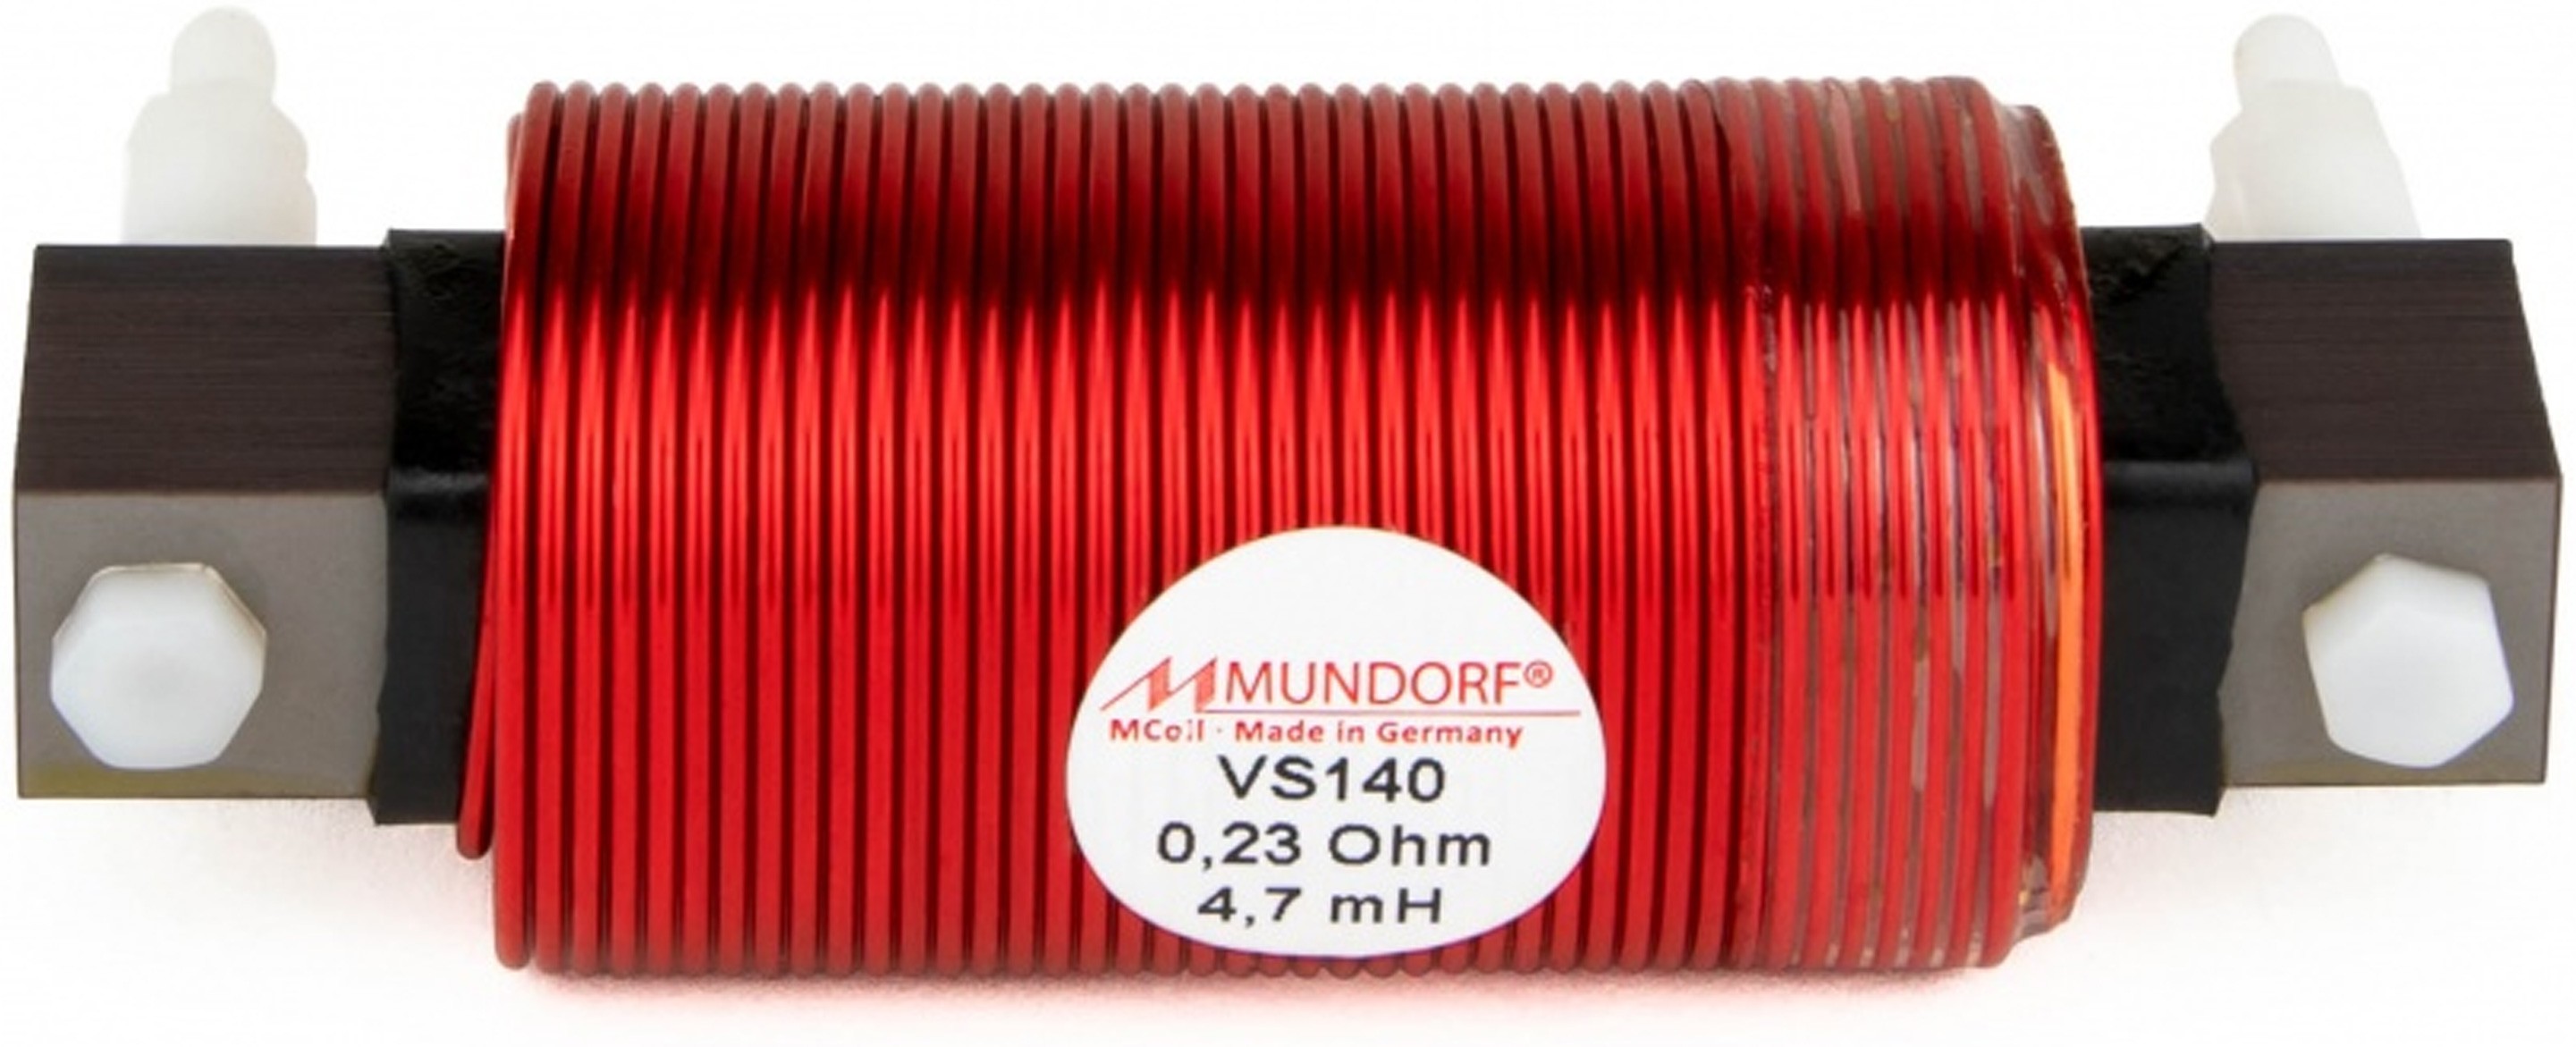 MUNDORF VS140-33 MCOIL ICORE Copper Coil Feron Core 33mH